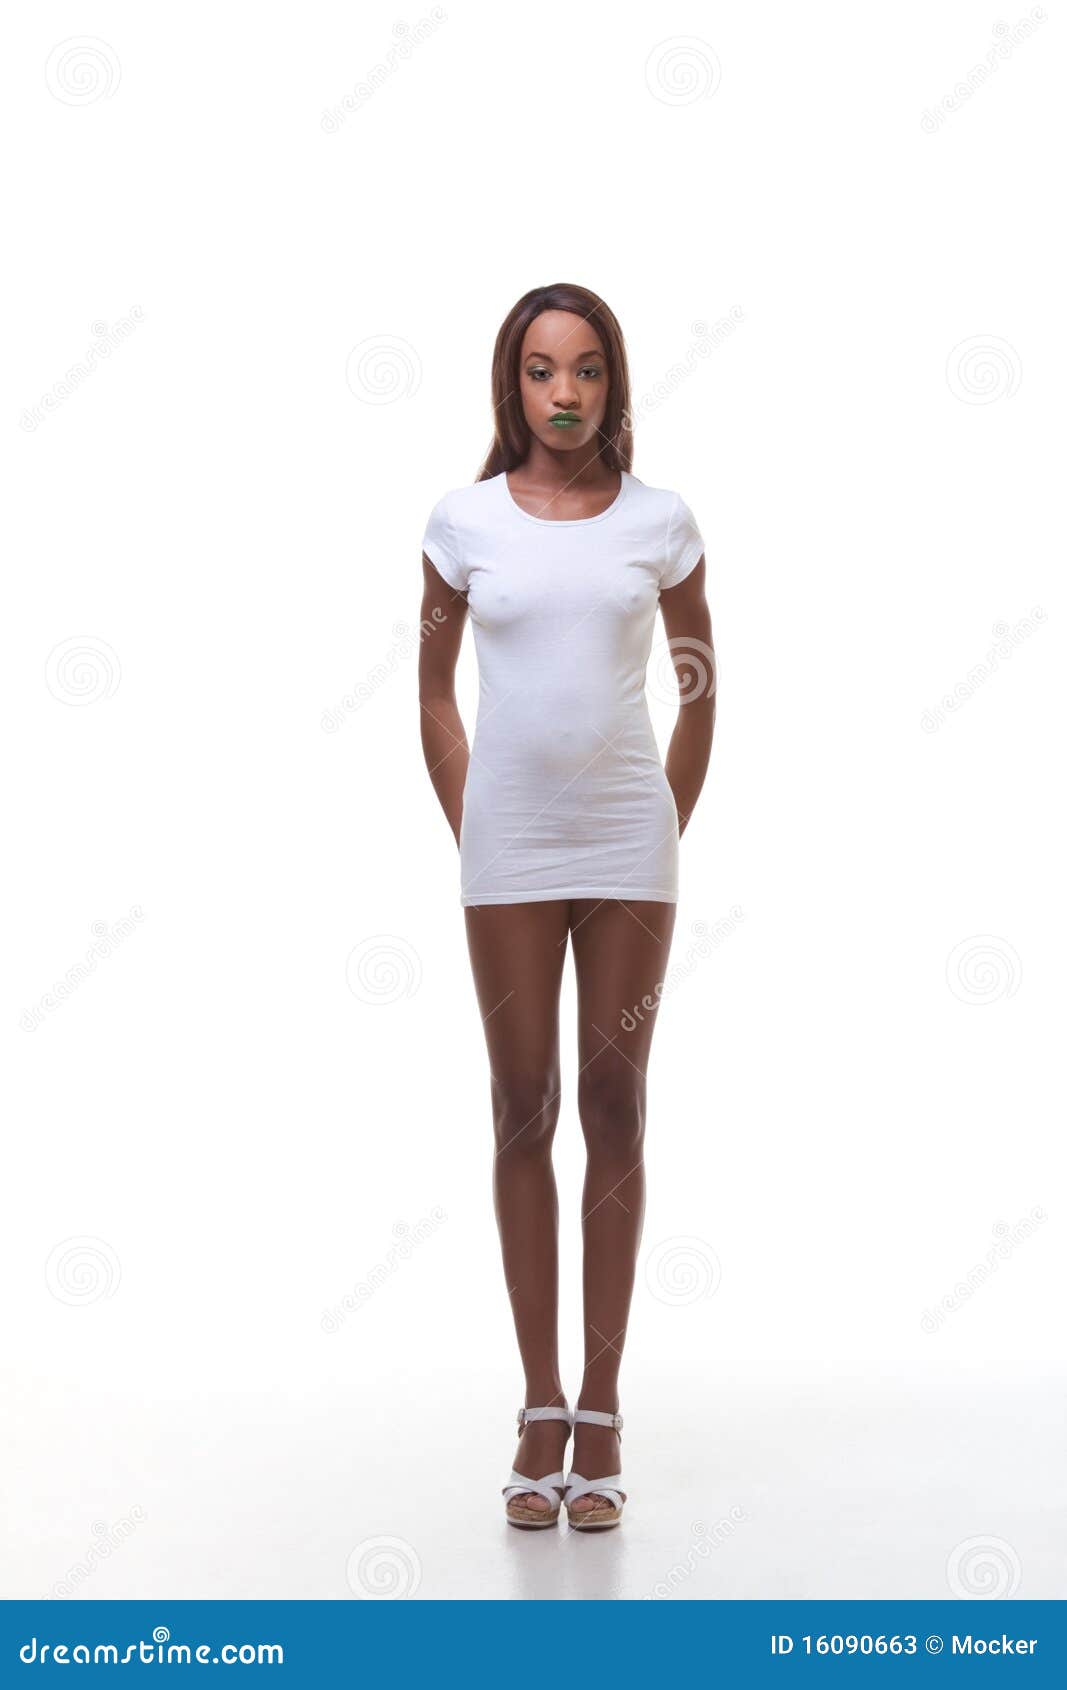 Black Naked Woman In White Tshirt Slender Legs Stock Photo 